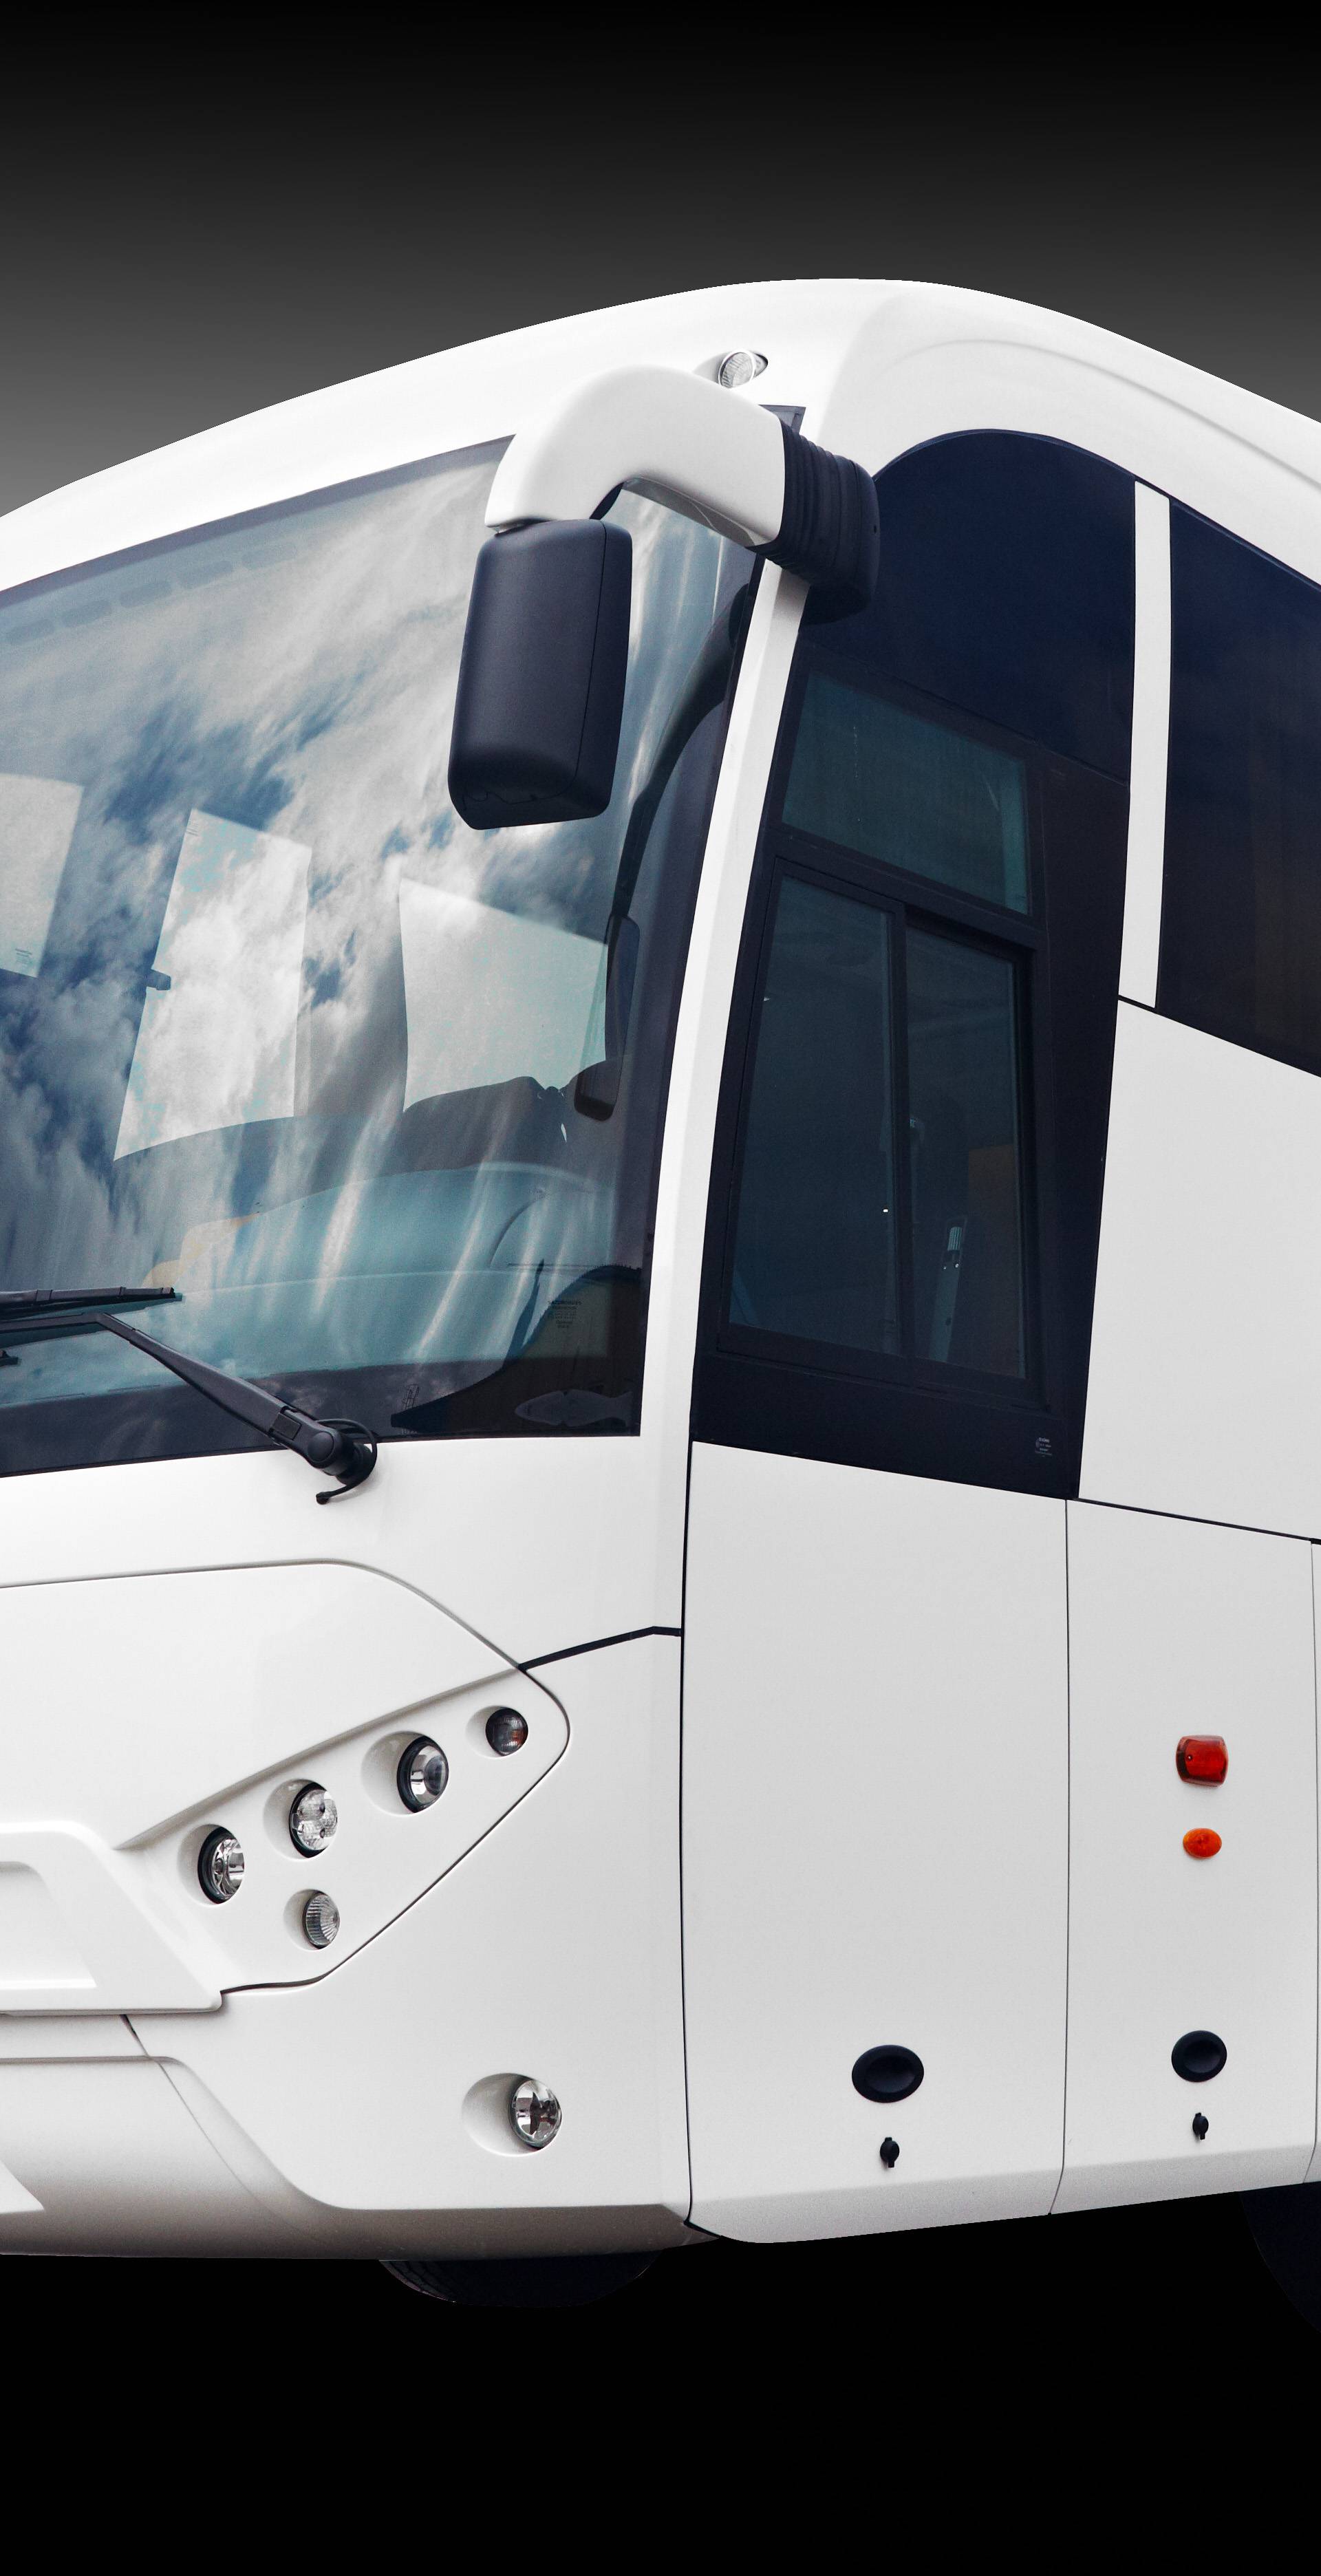 Hrvatski Crobus isporučit će 2000 autobusa na Bliski istok